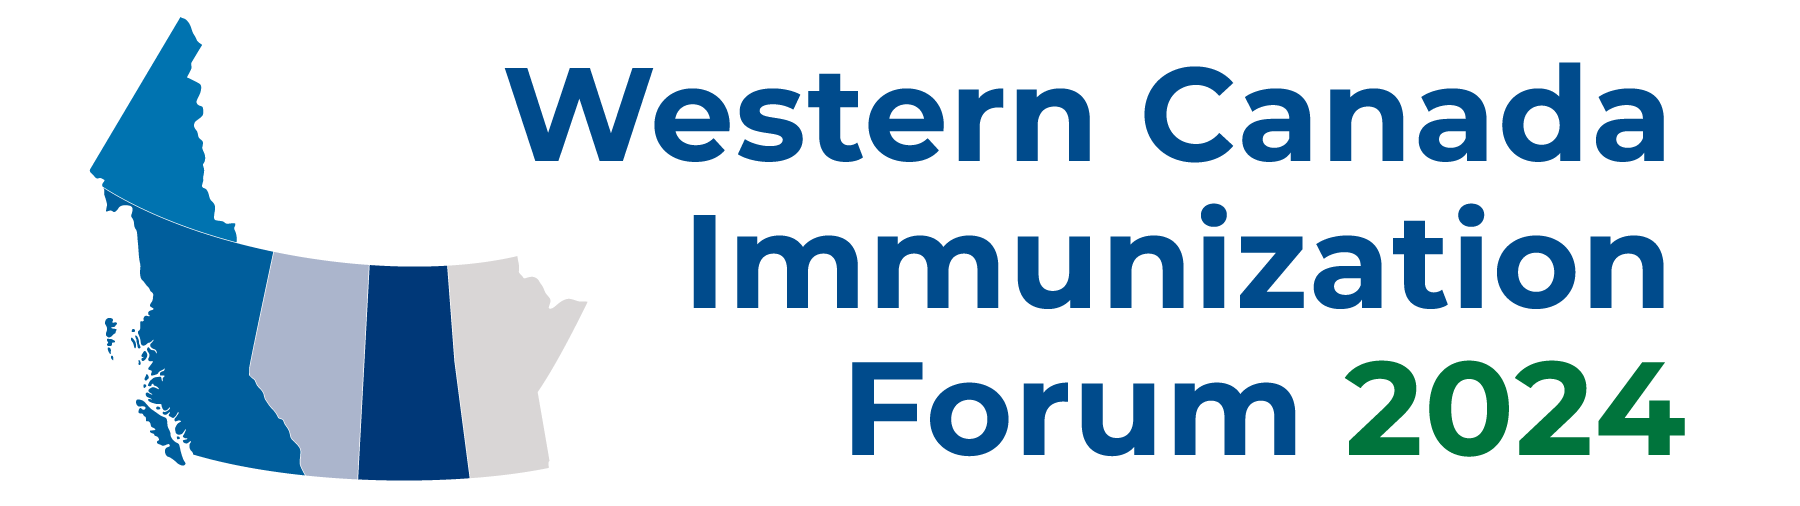 Western Canada Immunization Forum 2024